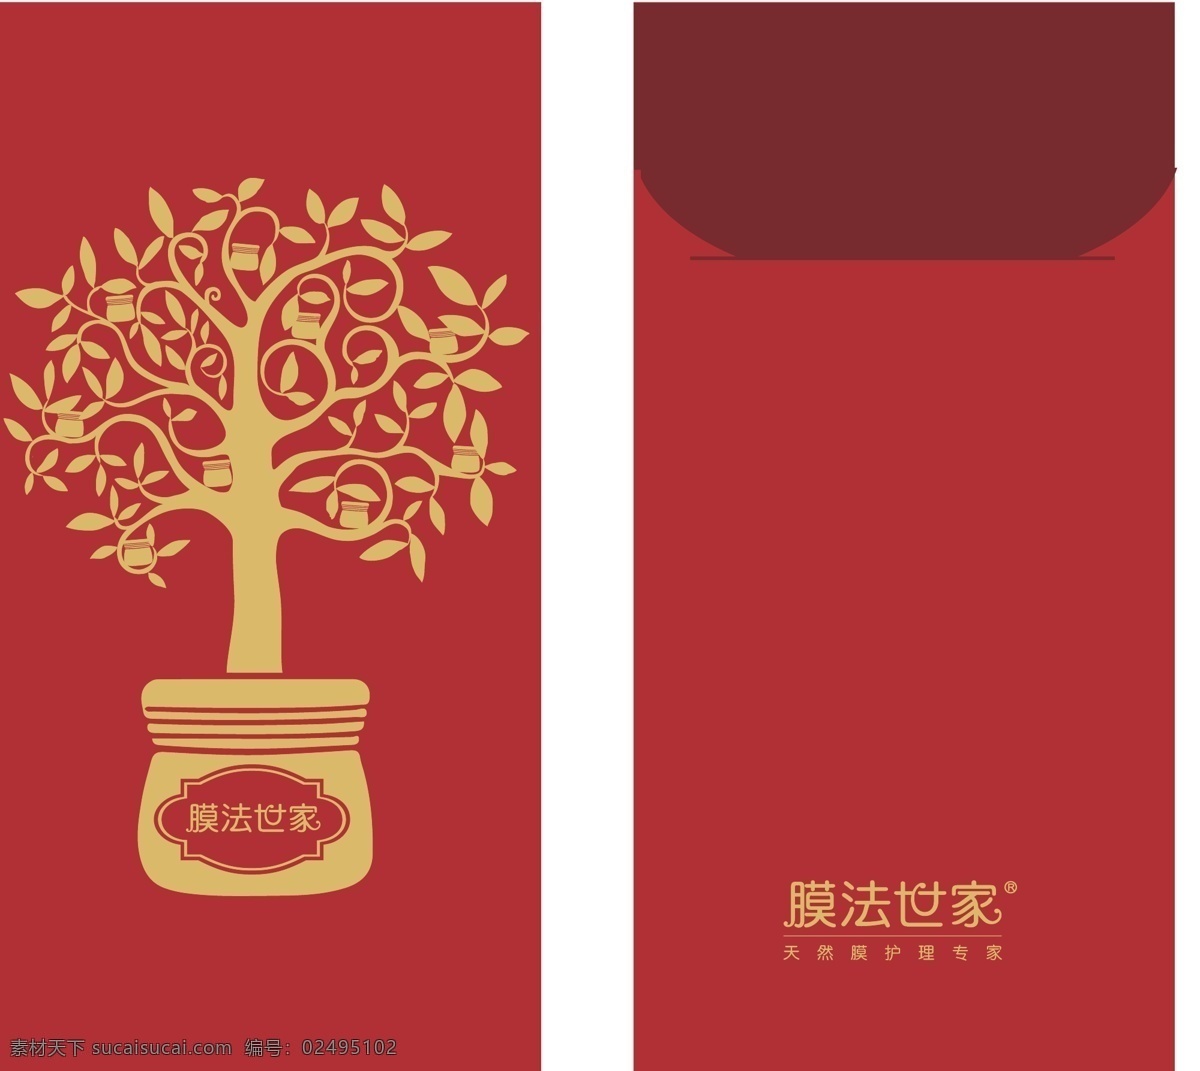 创意红包背景 创意红包设计 假金色标号 适合公司文化 过年 过节 红包 派发 礼品赠送